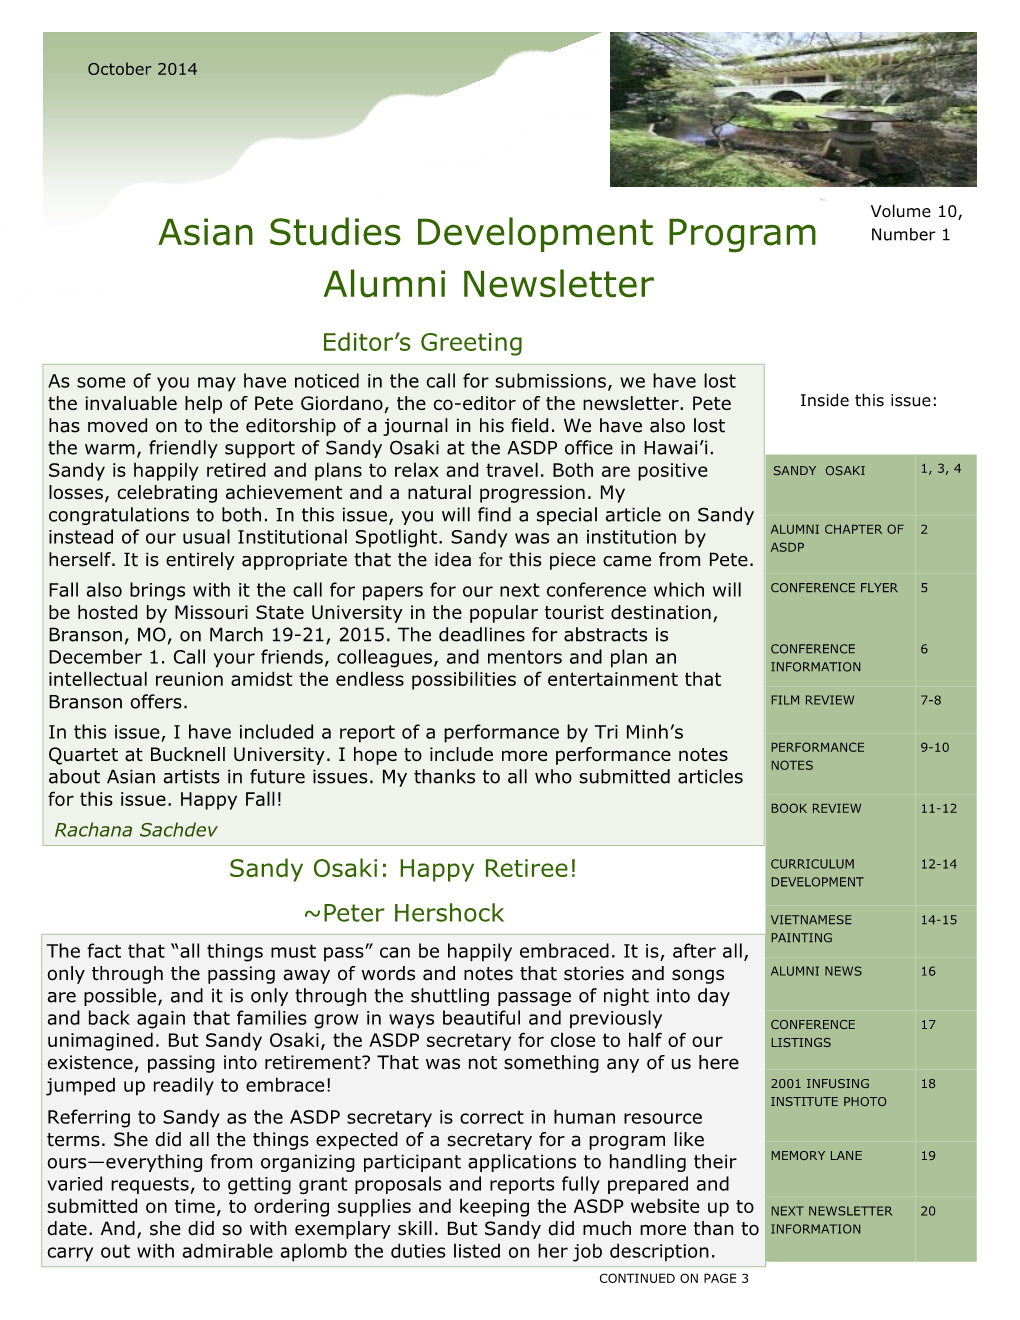 Asian Studies Development Program Alumni Newsletter Volume 10, Number 1